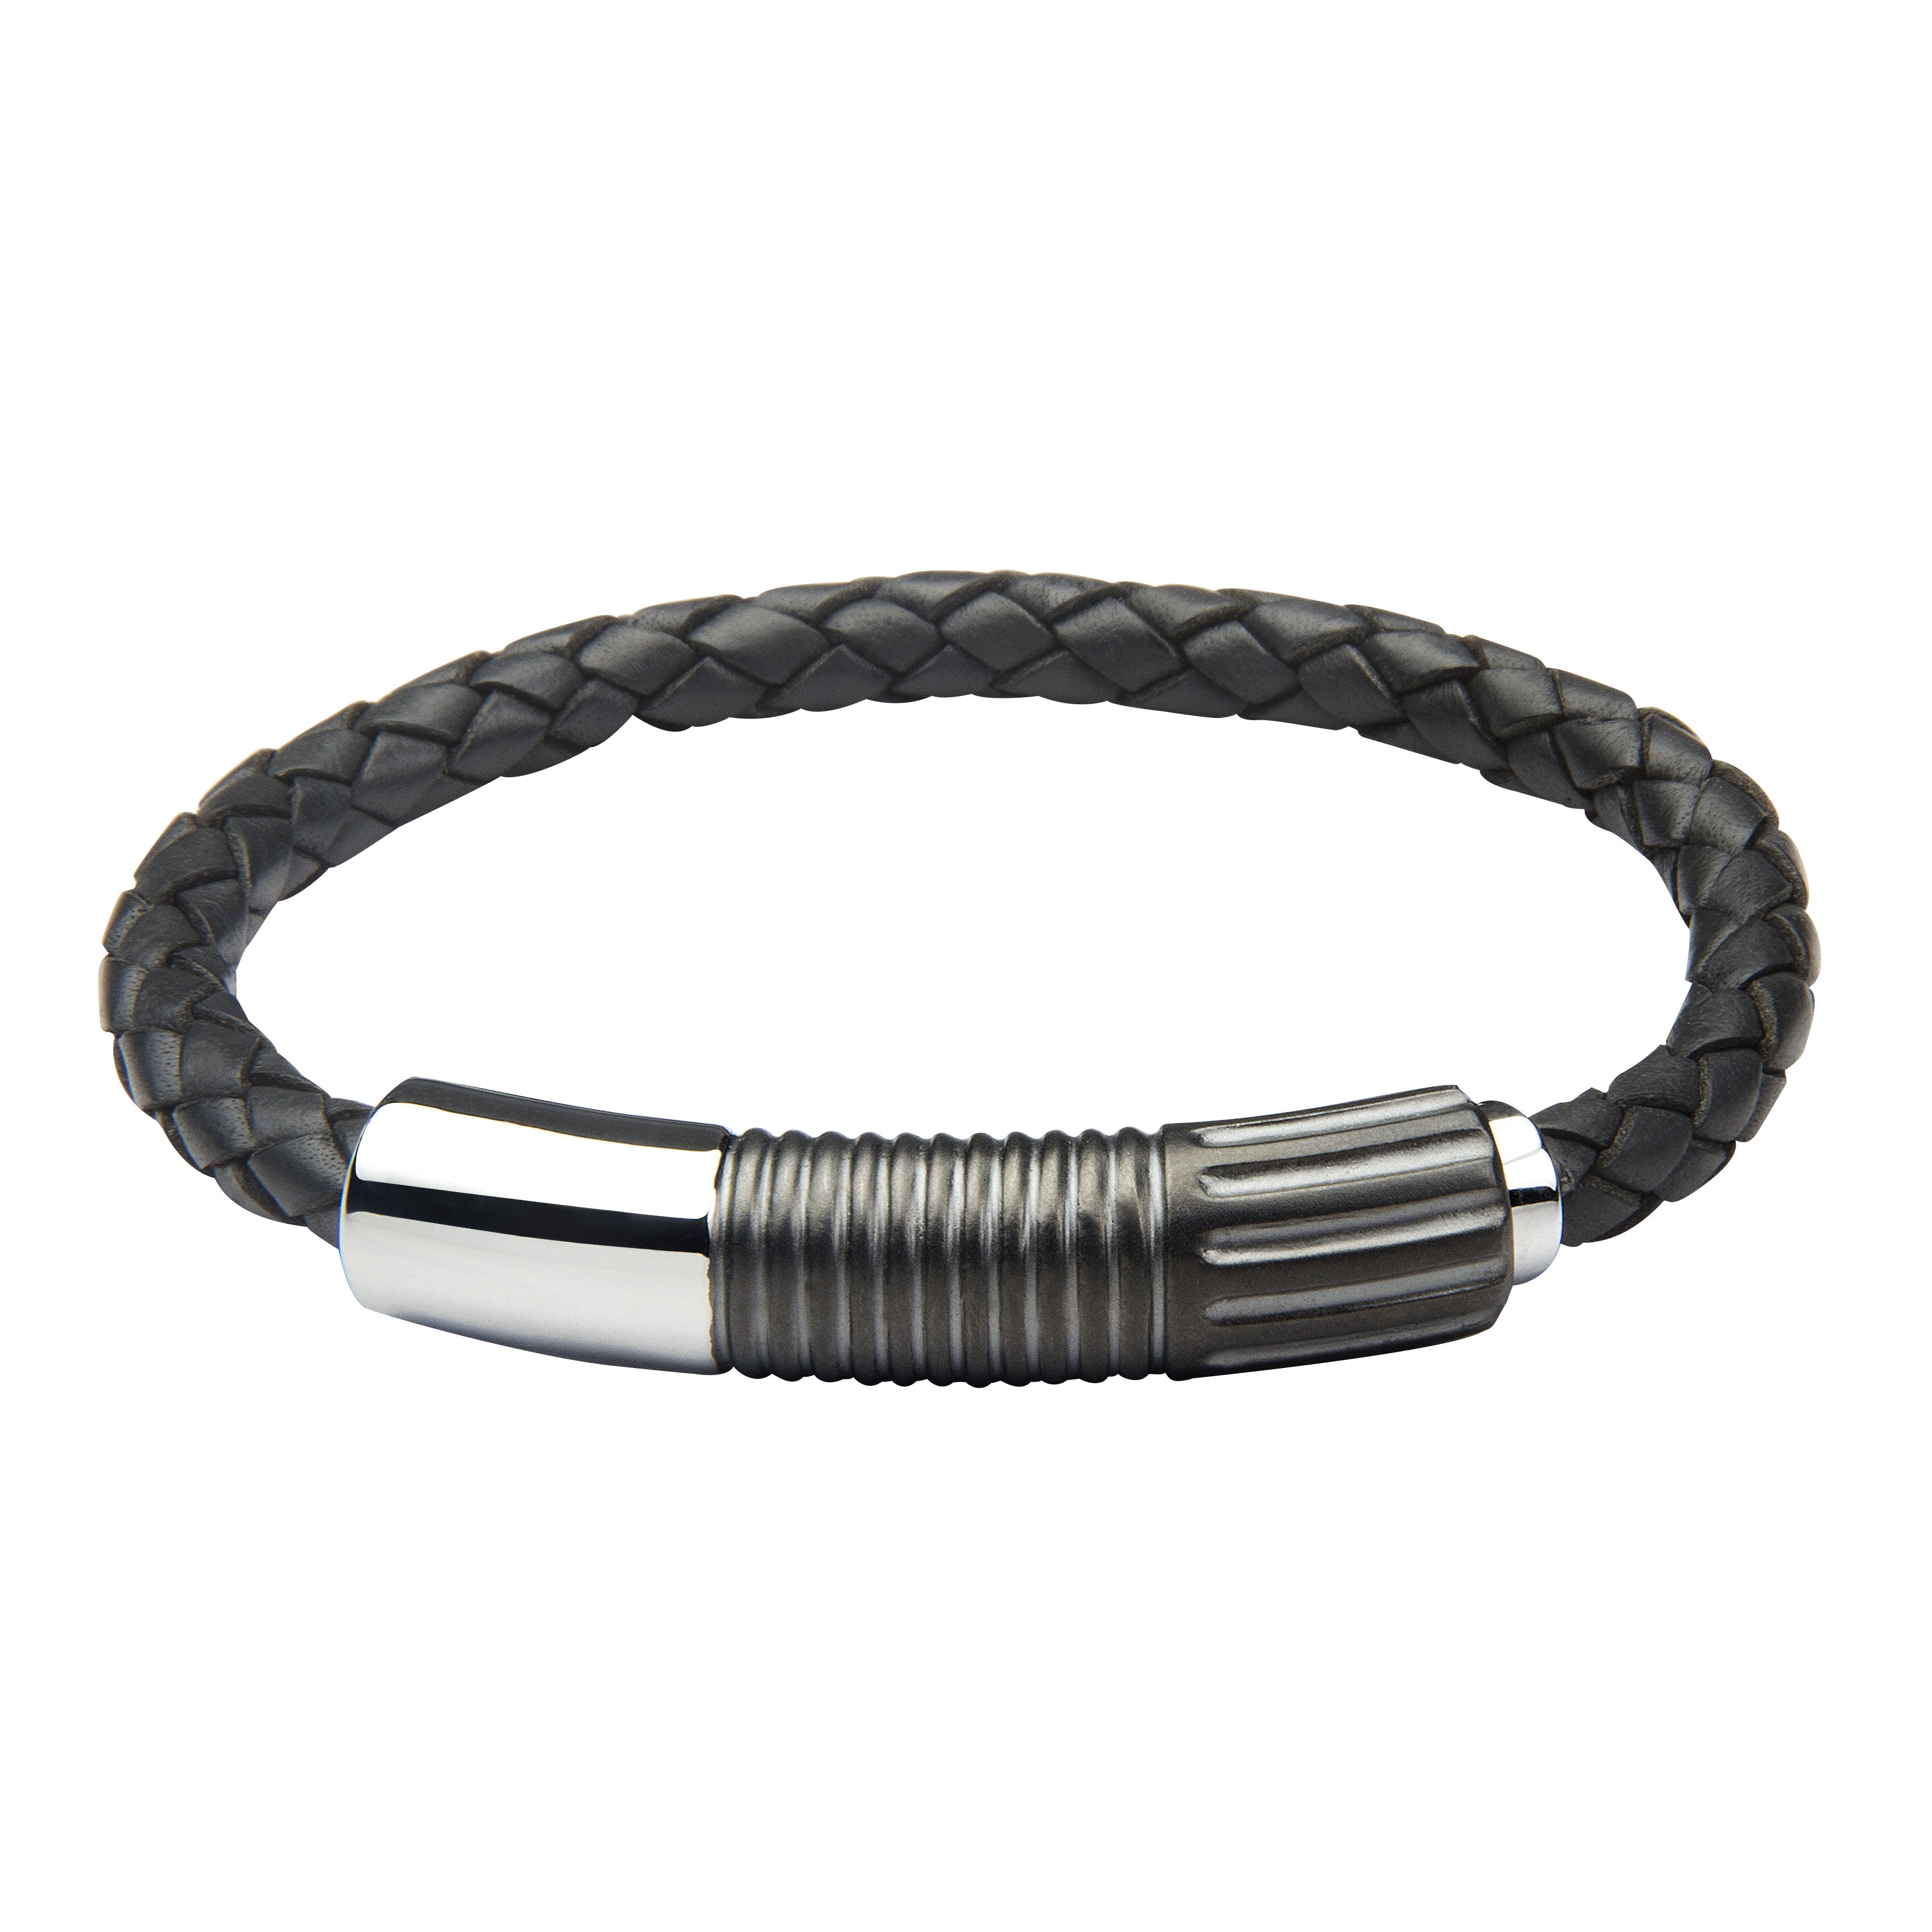 INB26 leather and steel adjustable bracelet